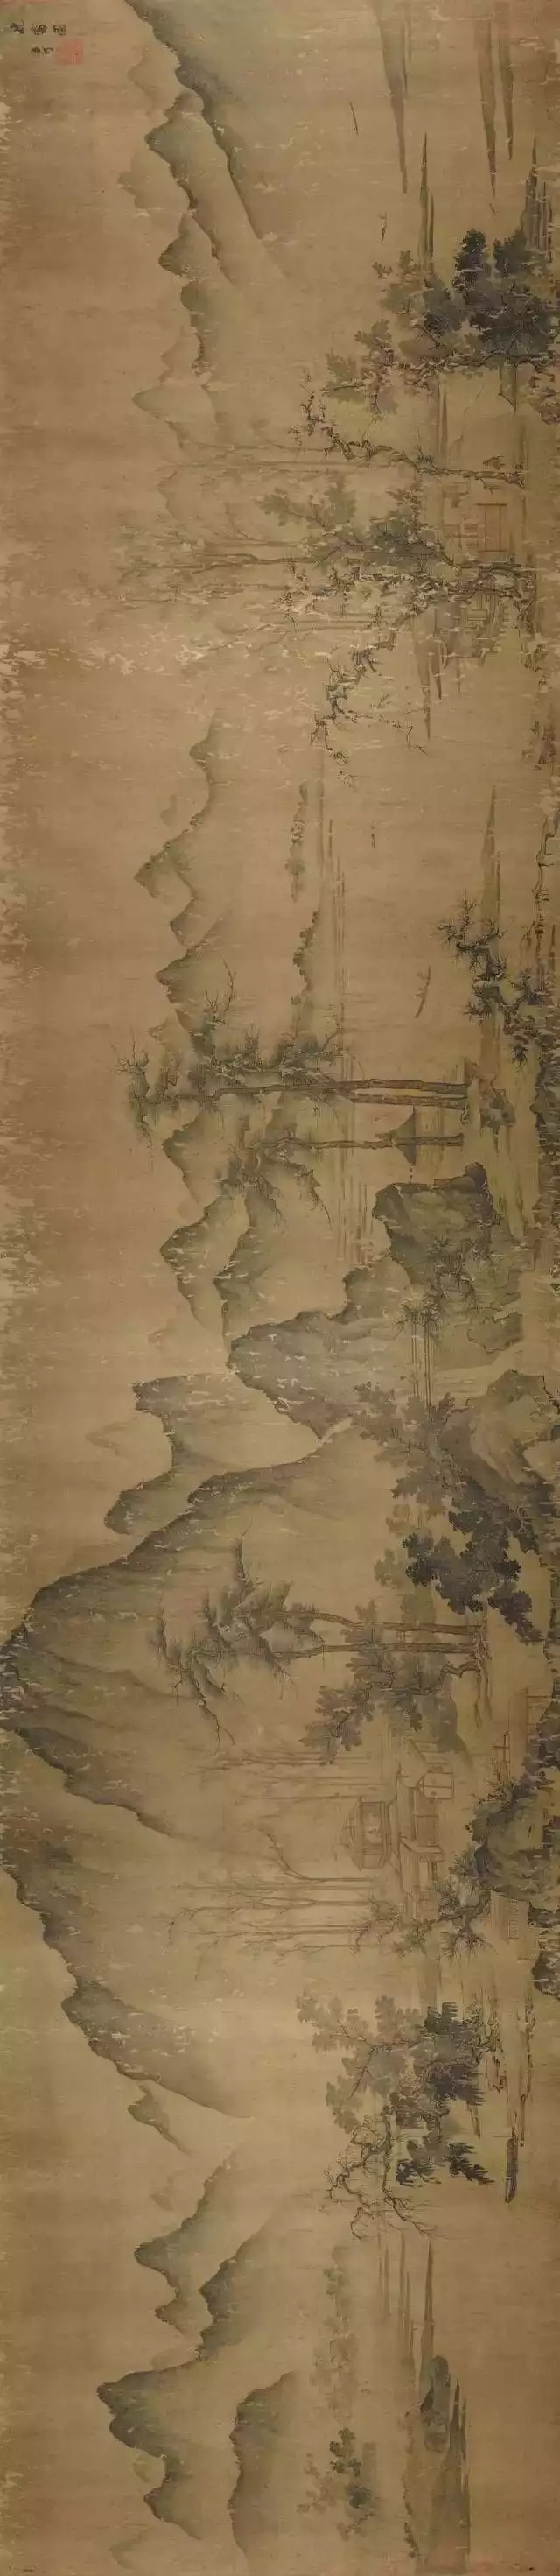 宋·文同 晚霭横卷图 纸本墨色 30.2×216cm 美国大都会博物馆藏